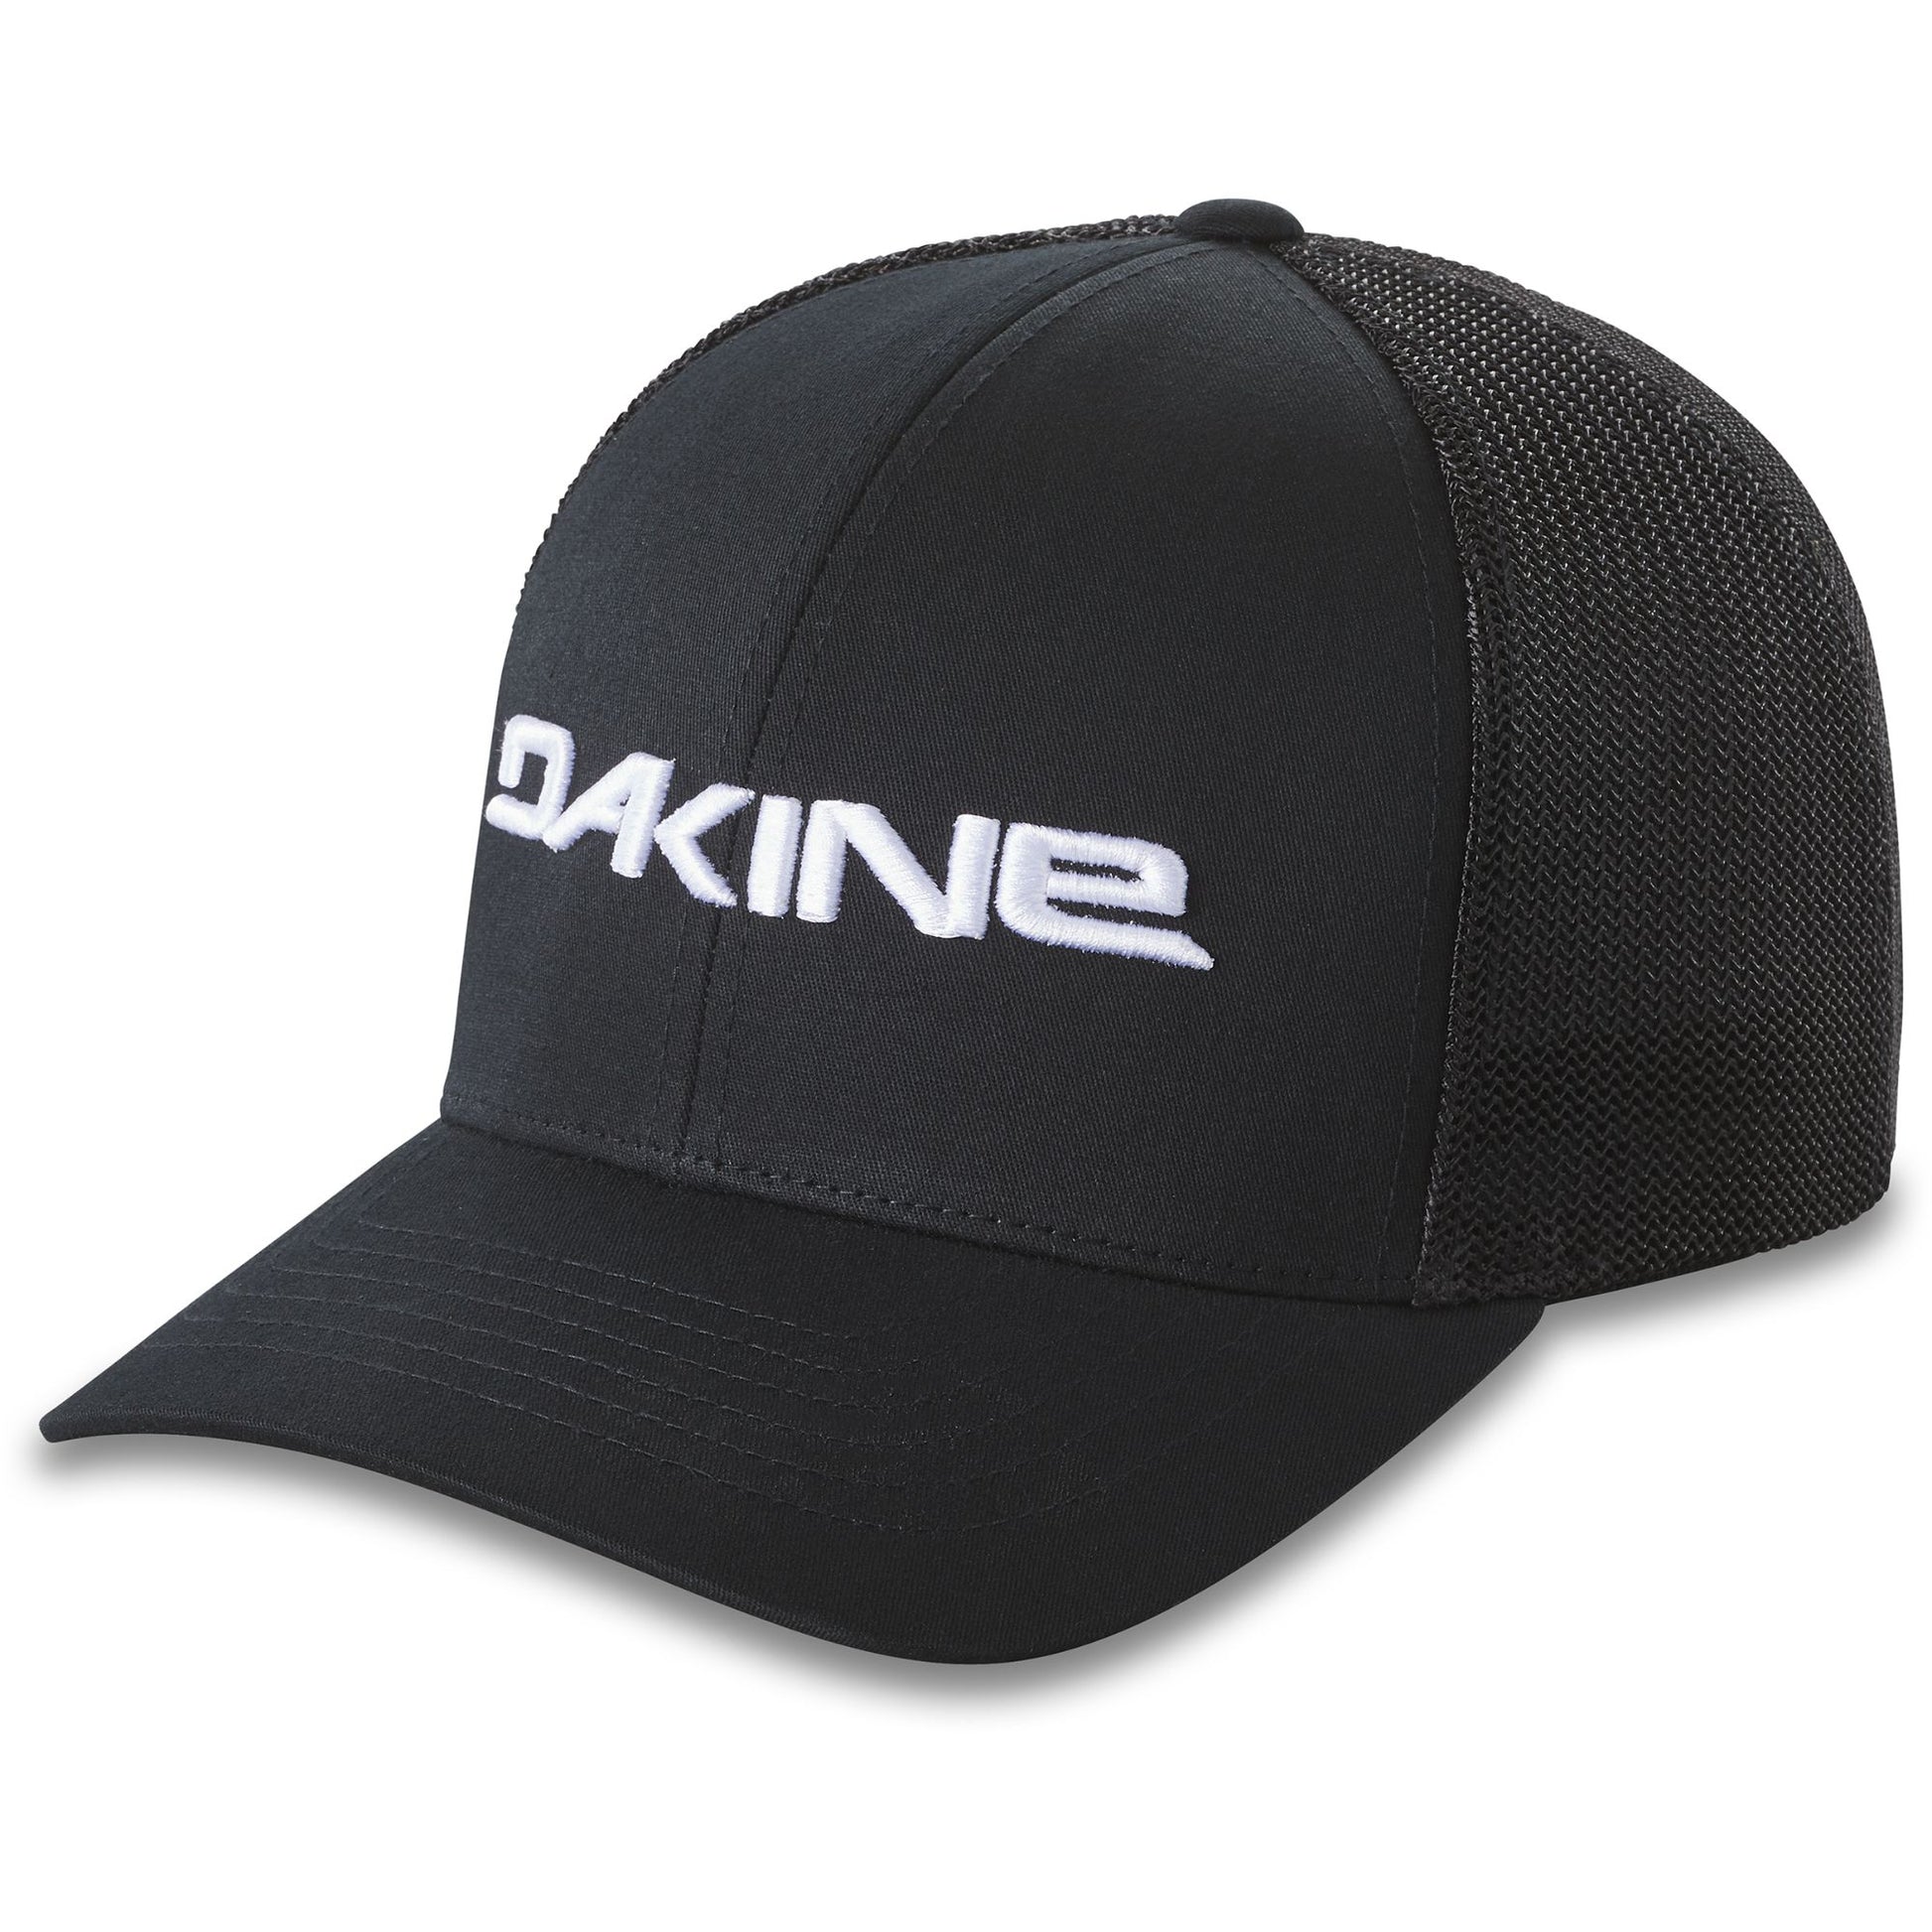 Dakine Sideline Trucker Hat –